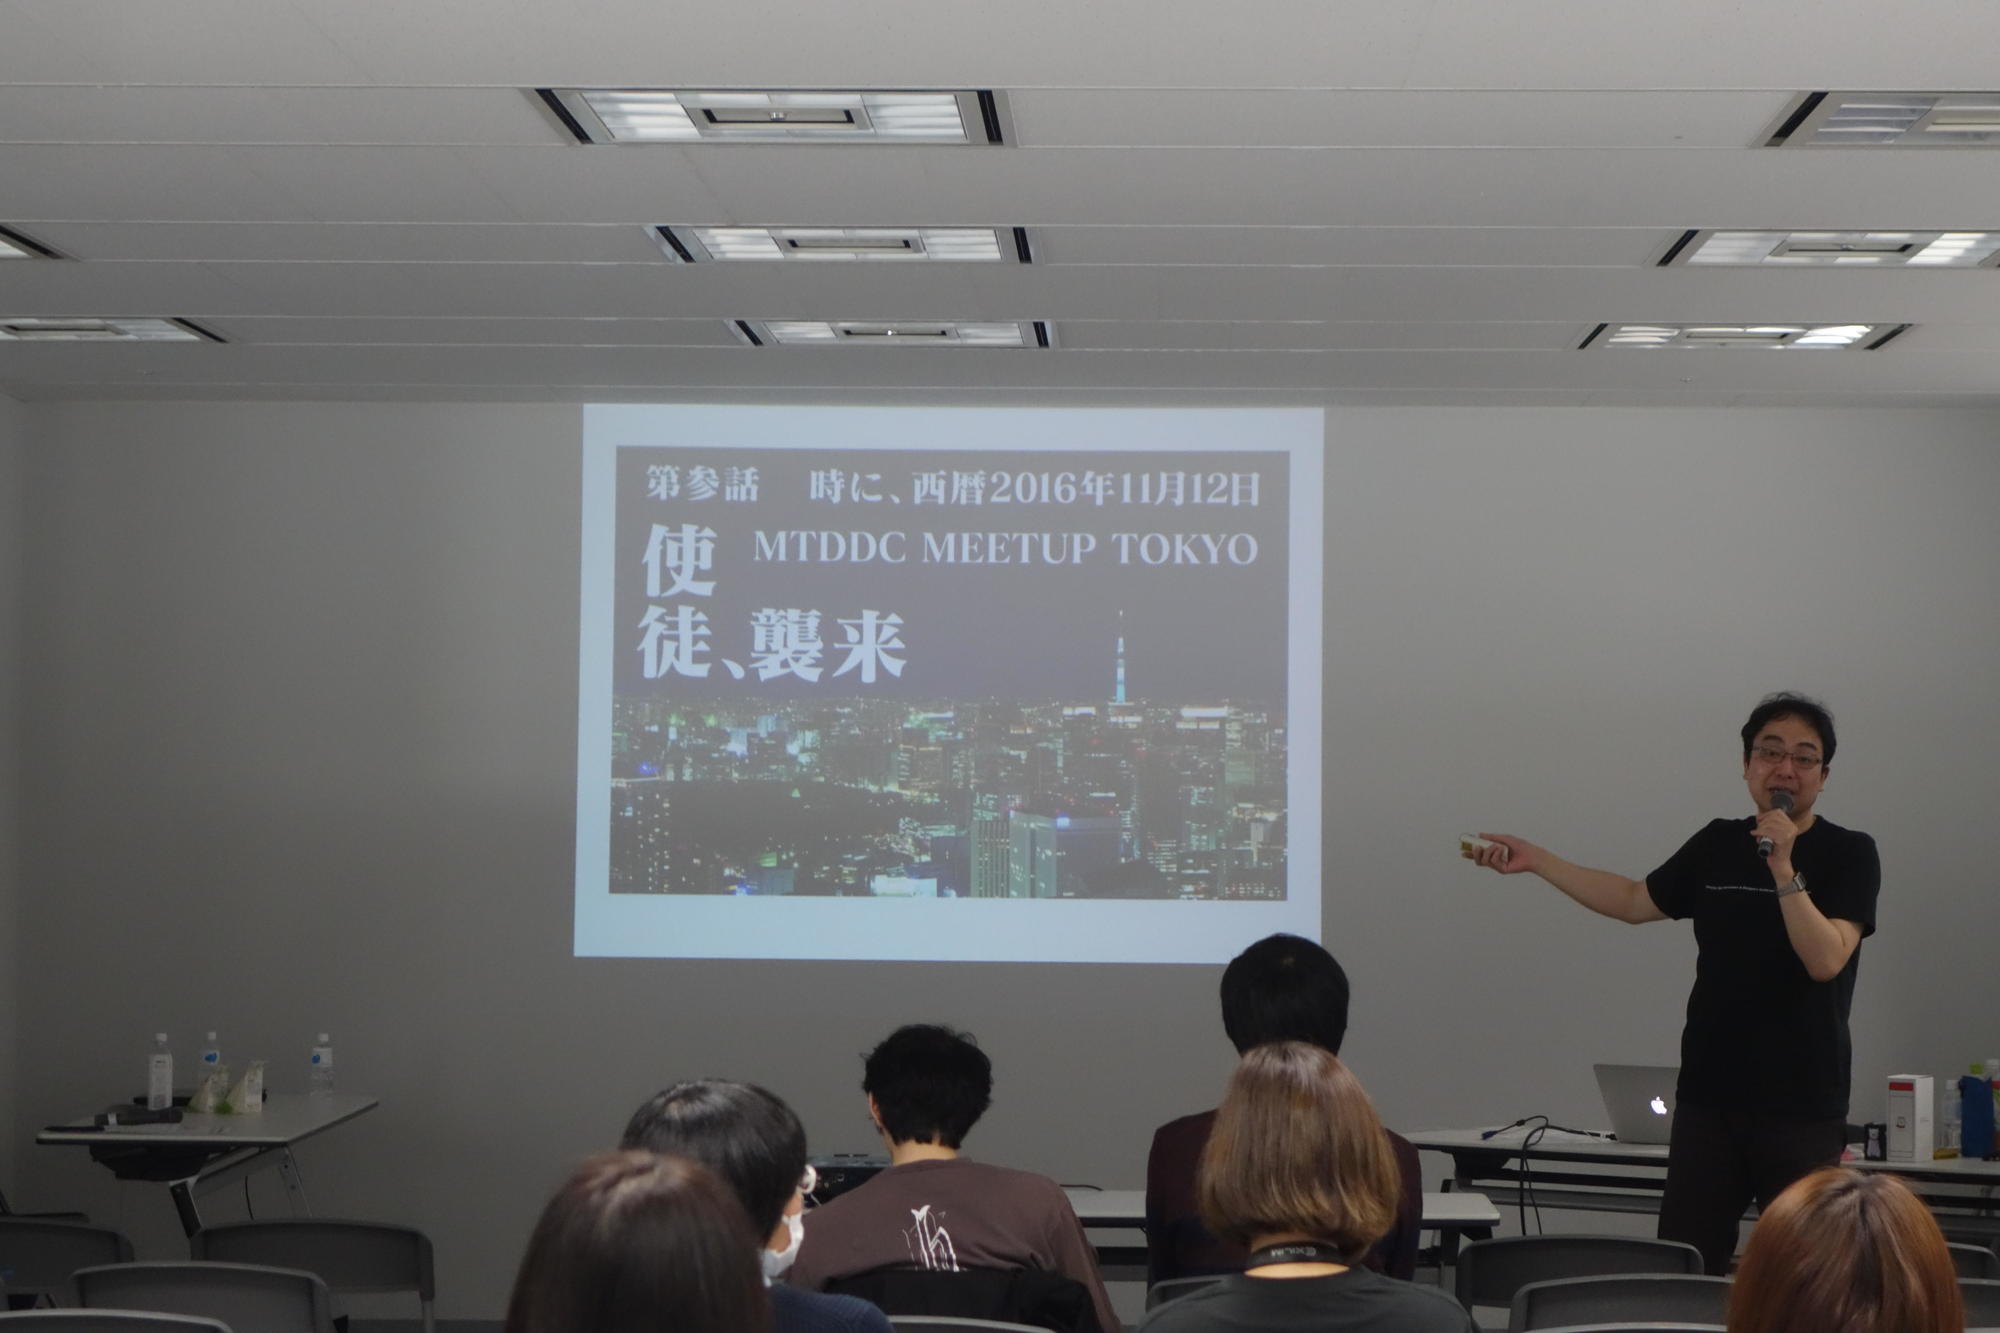 MTDDC Meetup TOKYO 2016のFONTPLUS 関口 浩之さんのセッションでアニメ『エヴァンゲリオン』のタイトル風で「第三話 時に、西暦2016年11月12日 MTDDC Meetup TOKYO 使徒、襲来」みたいなことがウェブフォントで実装できる、という実例